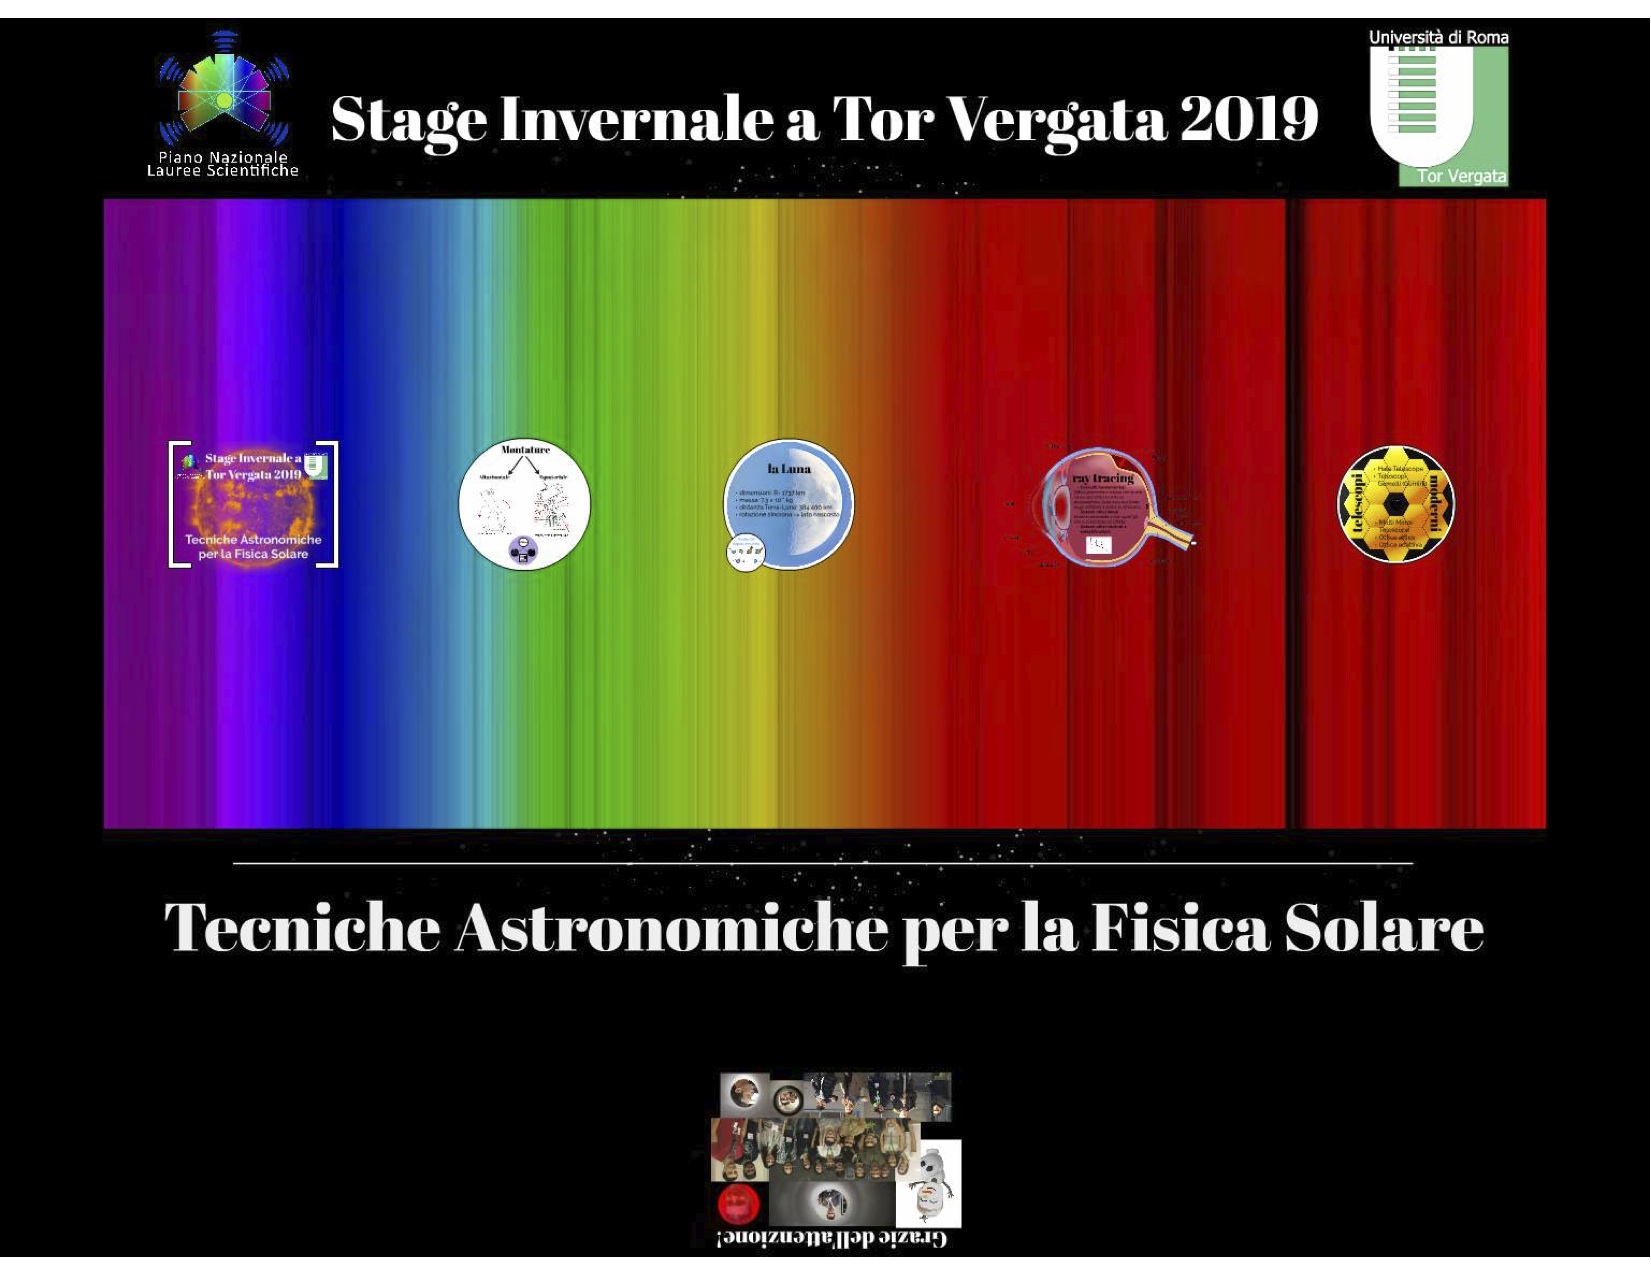 Stage Estivo 2016 - Fisica Solare - Copertina